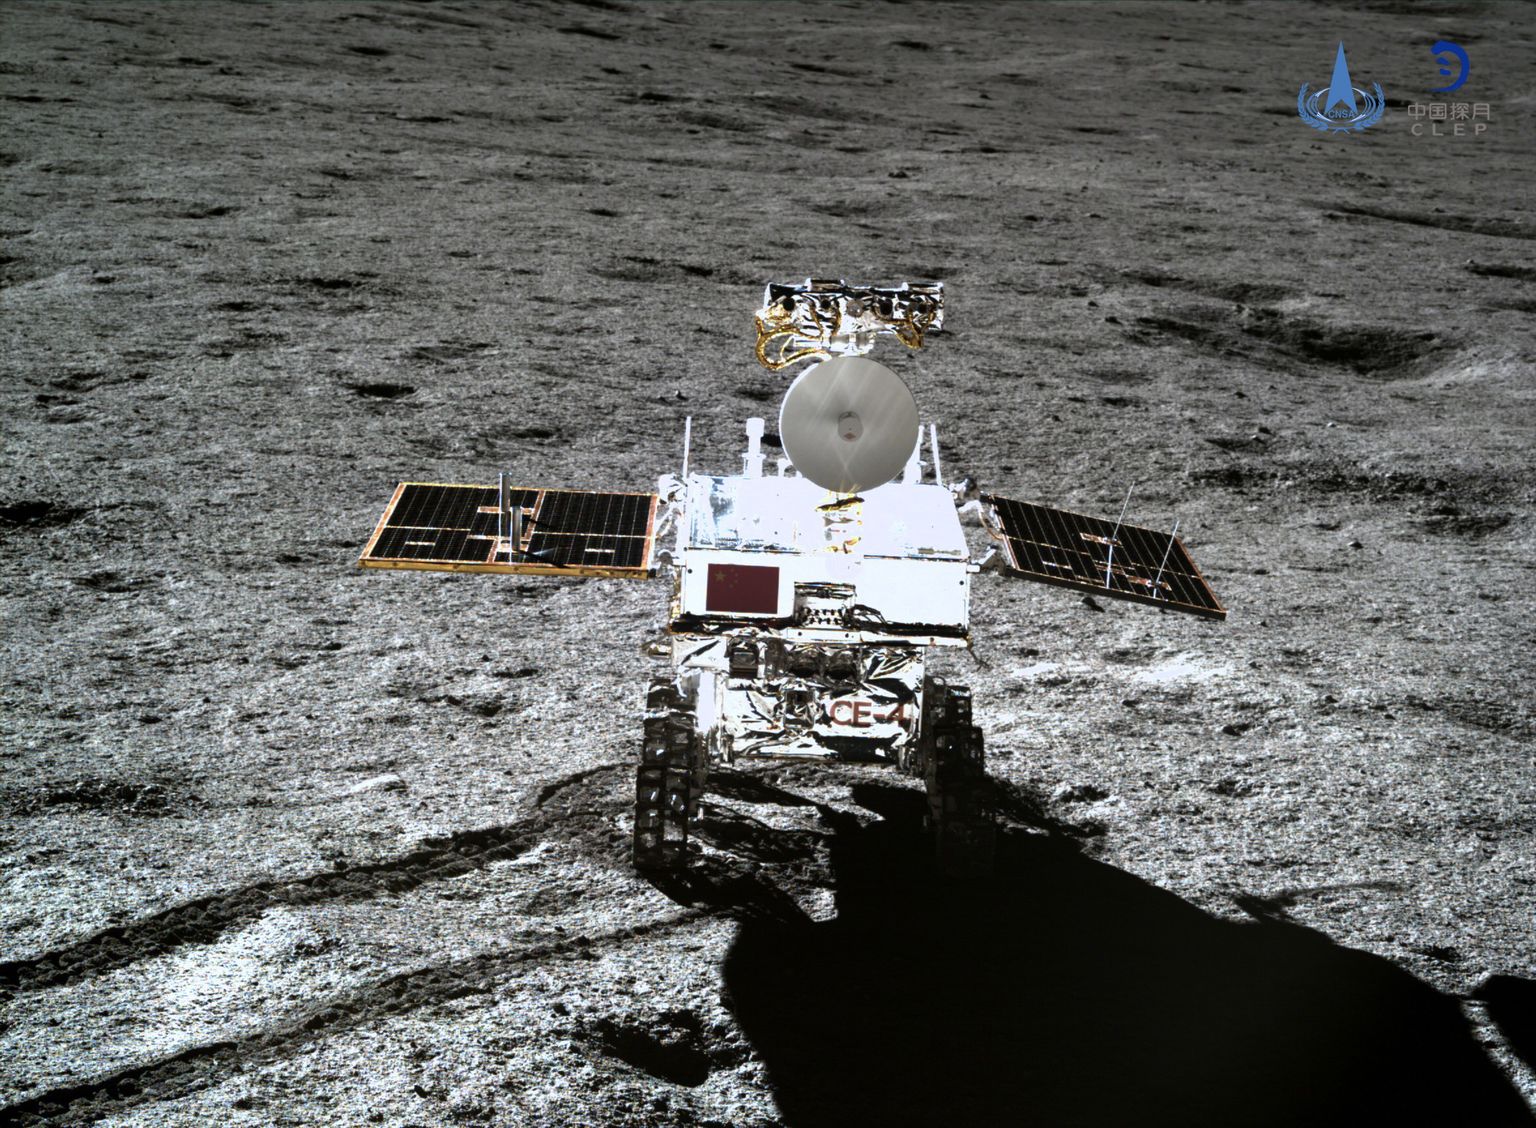 Hiina riikliku kosmoseameti (CNSA) avaldatud foto kuukulgur Yutu 2-st (Nefriitjänes 2) Kuu pinnal